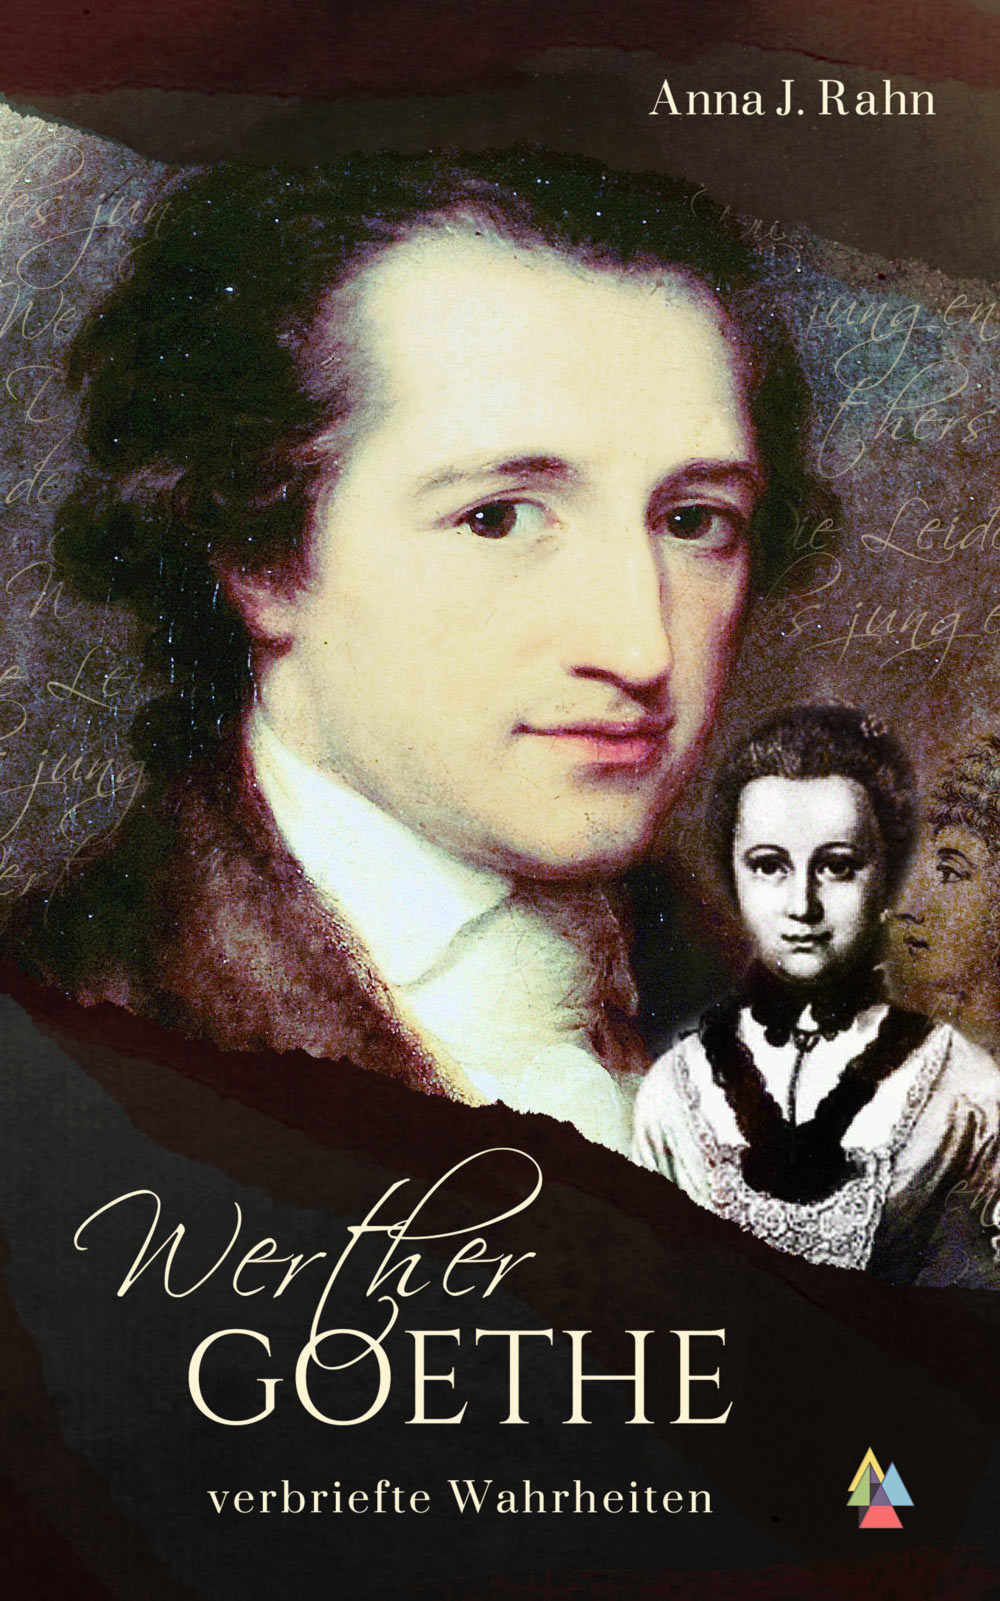 Werther Goethe - verbriefte Wahrheiten von Anna J. Rahn Jalara Verlag ISBN: ...